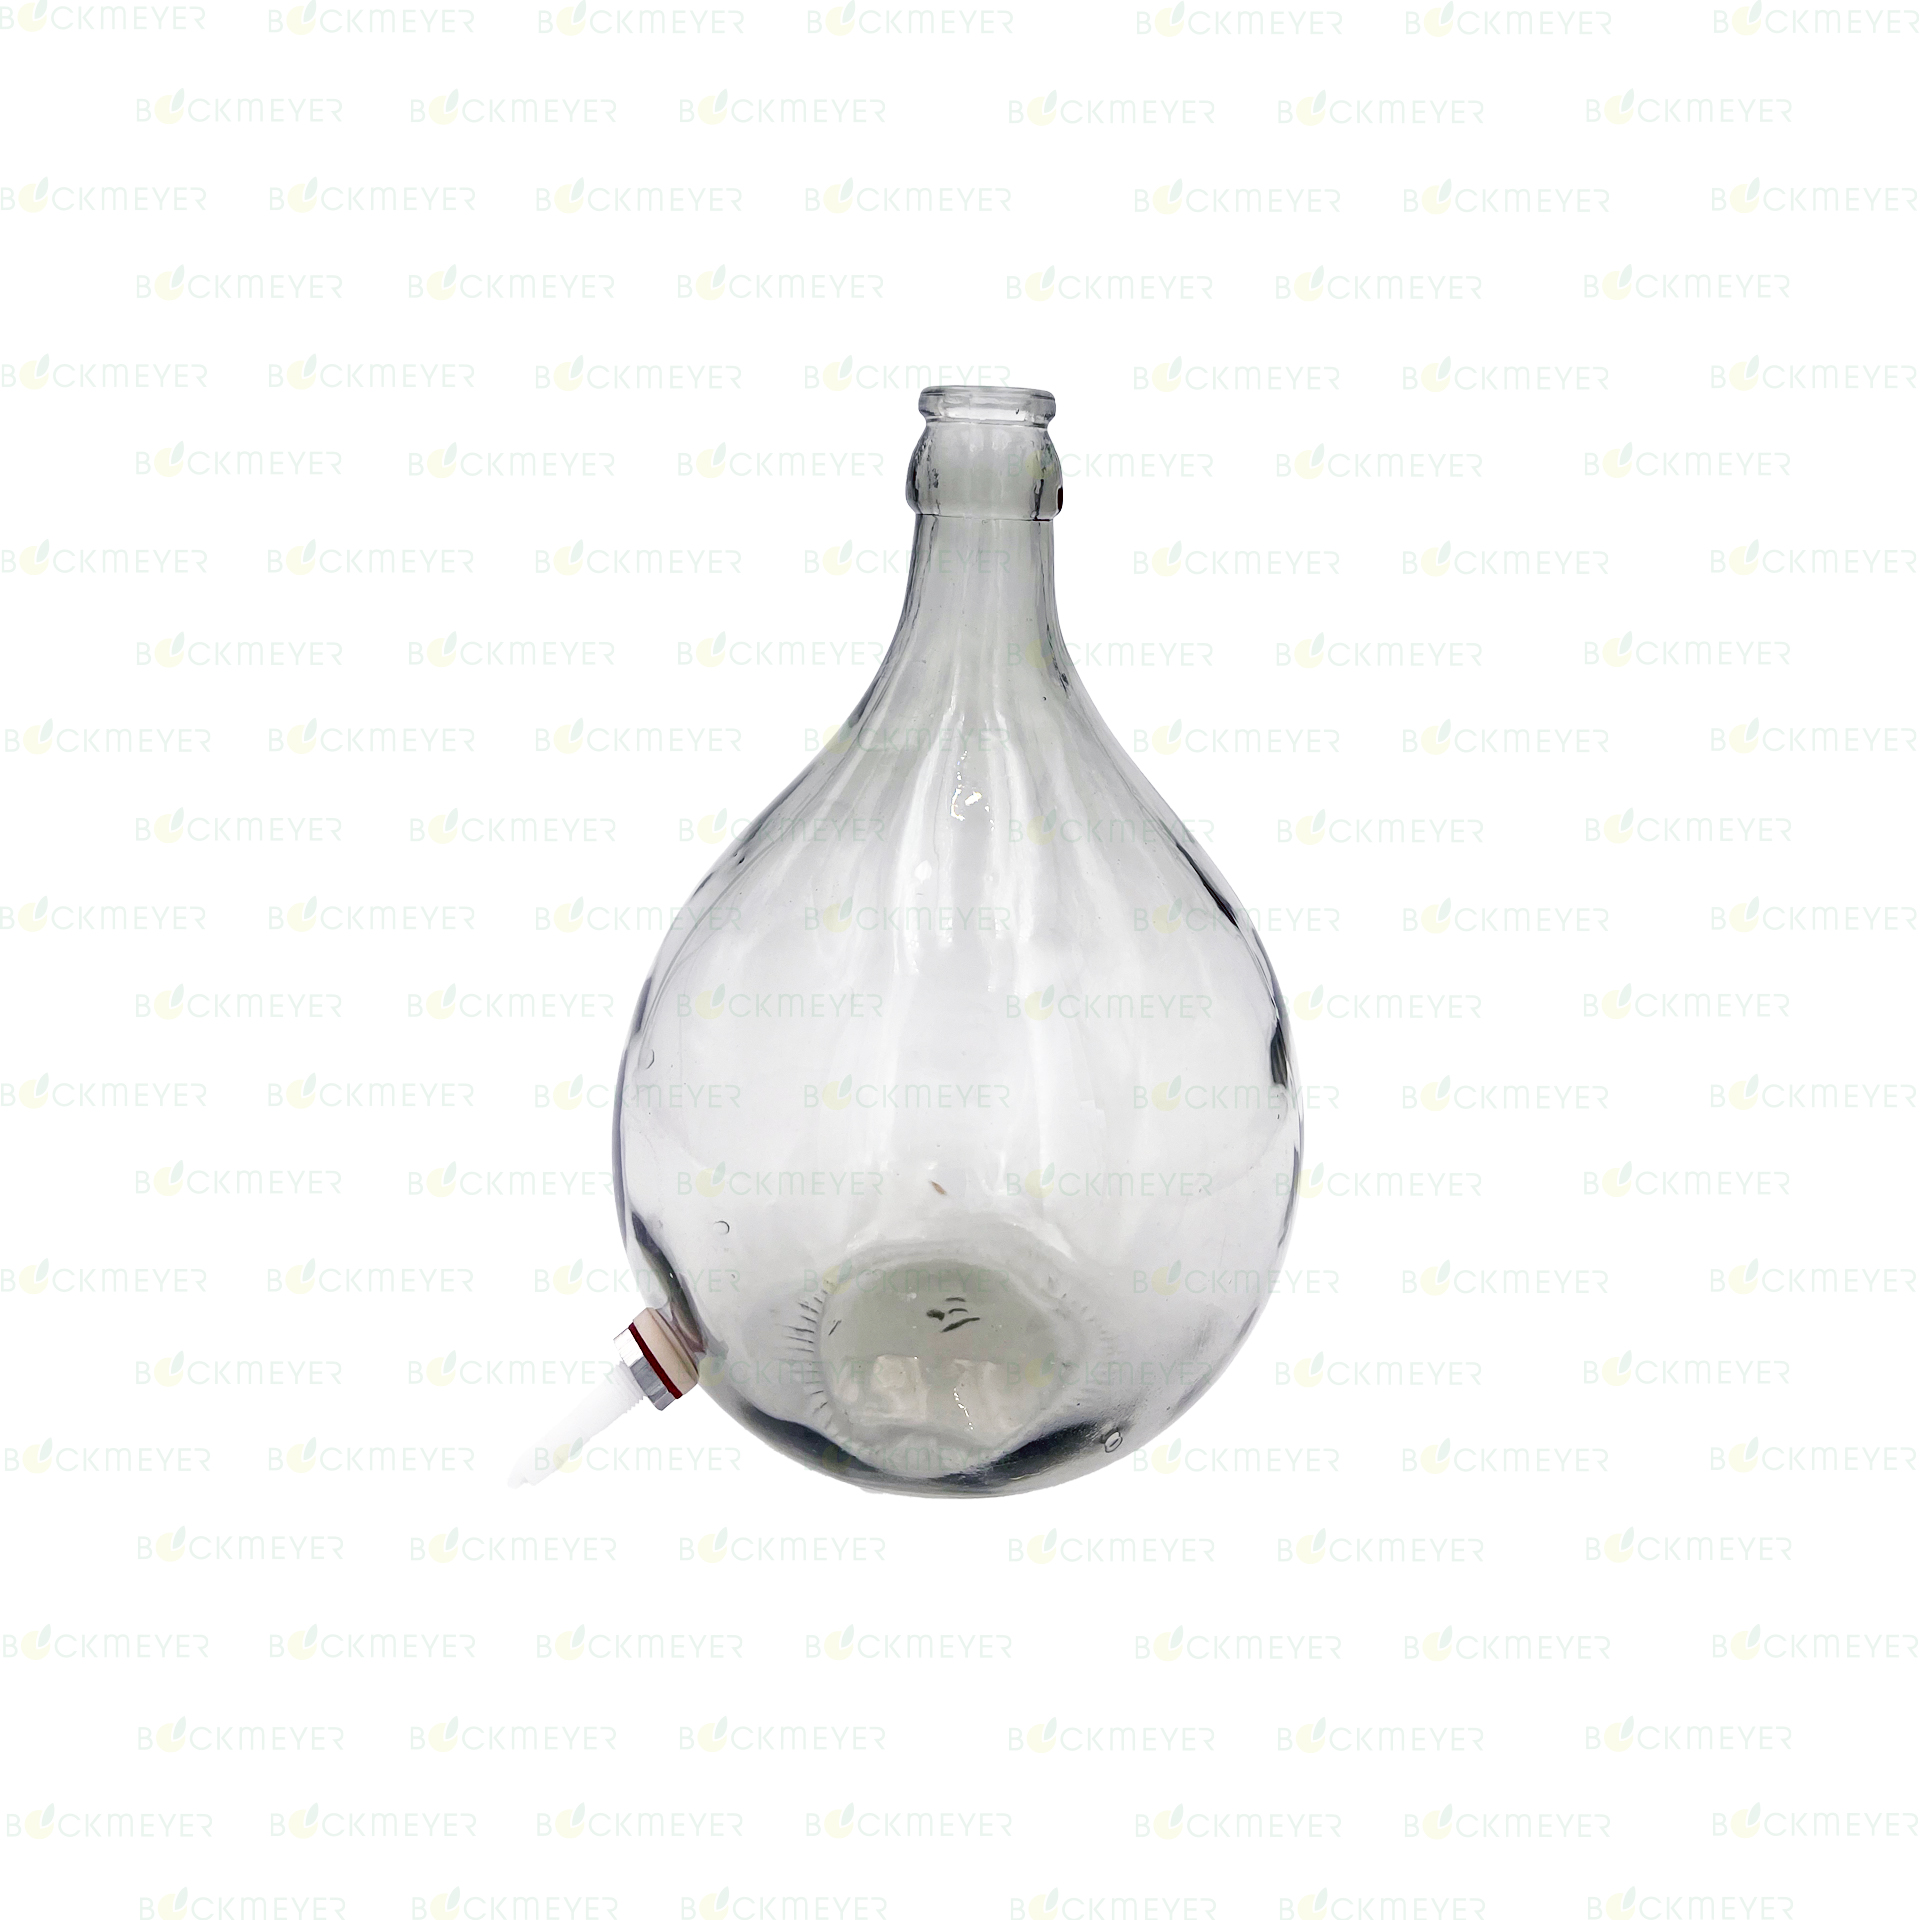 Glasballon 10,0 Liter, weiß, mit Kunststoff-Ablaß (OHNE VERSCHLUSS)